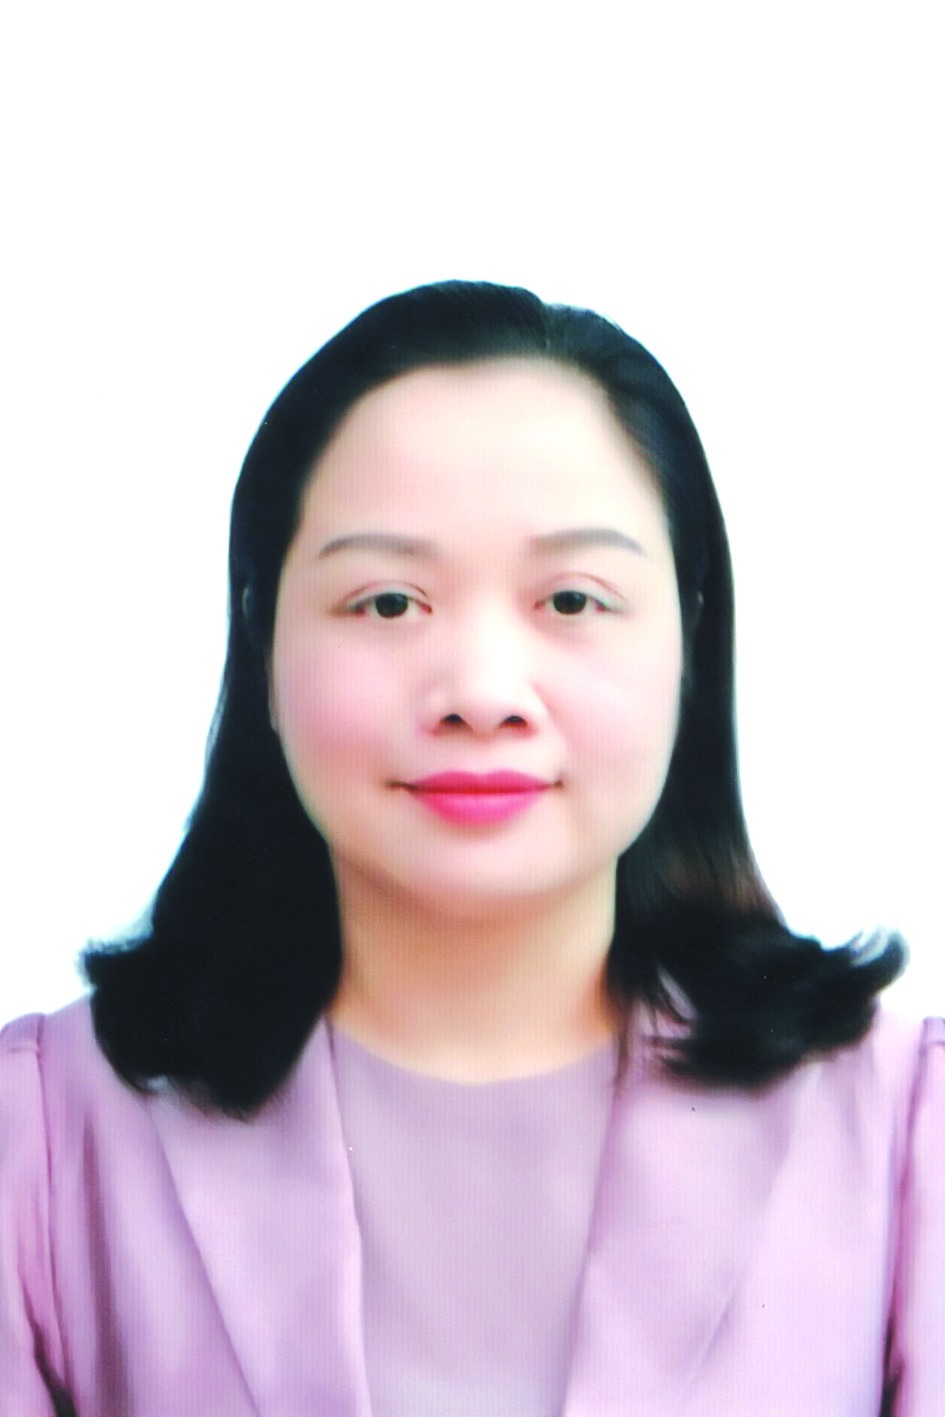 Chương trình hành động của Bí thư Huyện ủy Ứng Hòa Bùi Thị Thu Hiền, ứng cử viên đại biểu HĐND TP Hà Nội nhiệm kỳ 2021 - 2026 - Ảnh 1